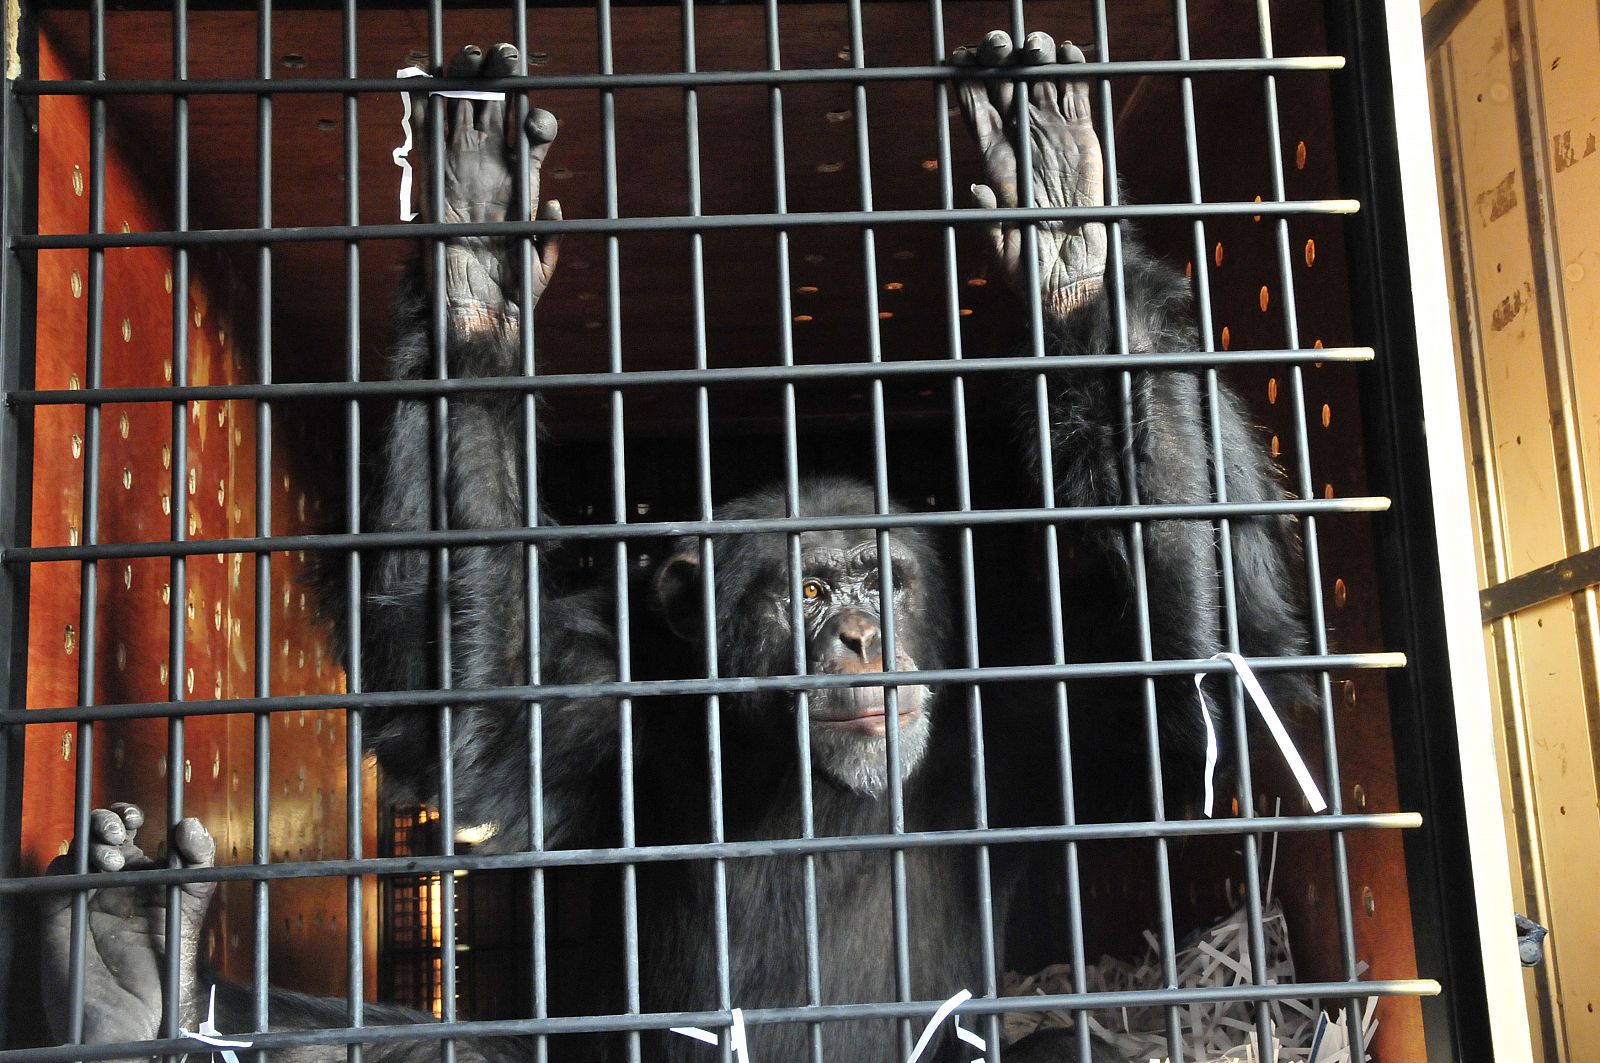 Omega, un chimpancé de 12 años, transportado en una jaula